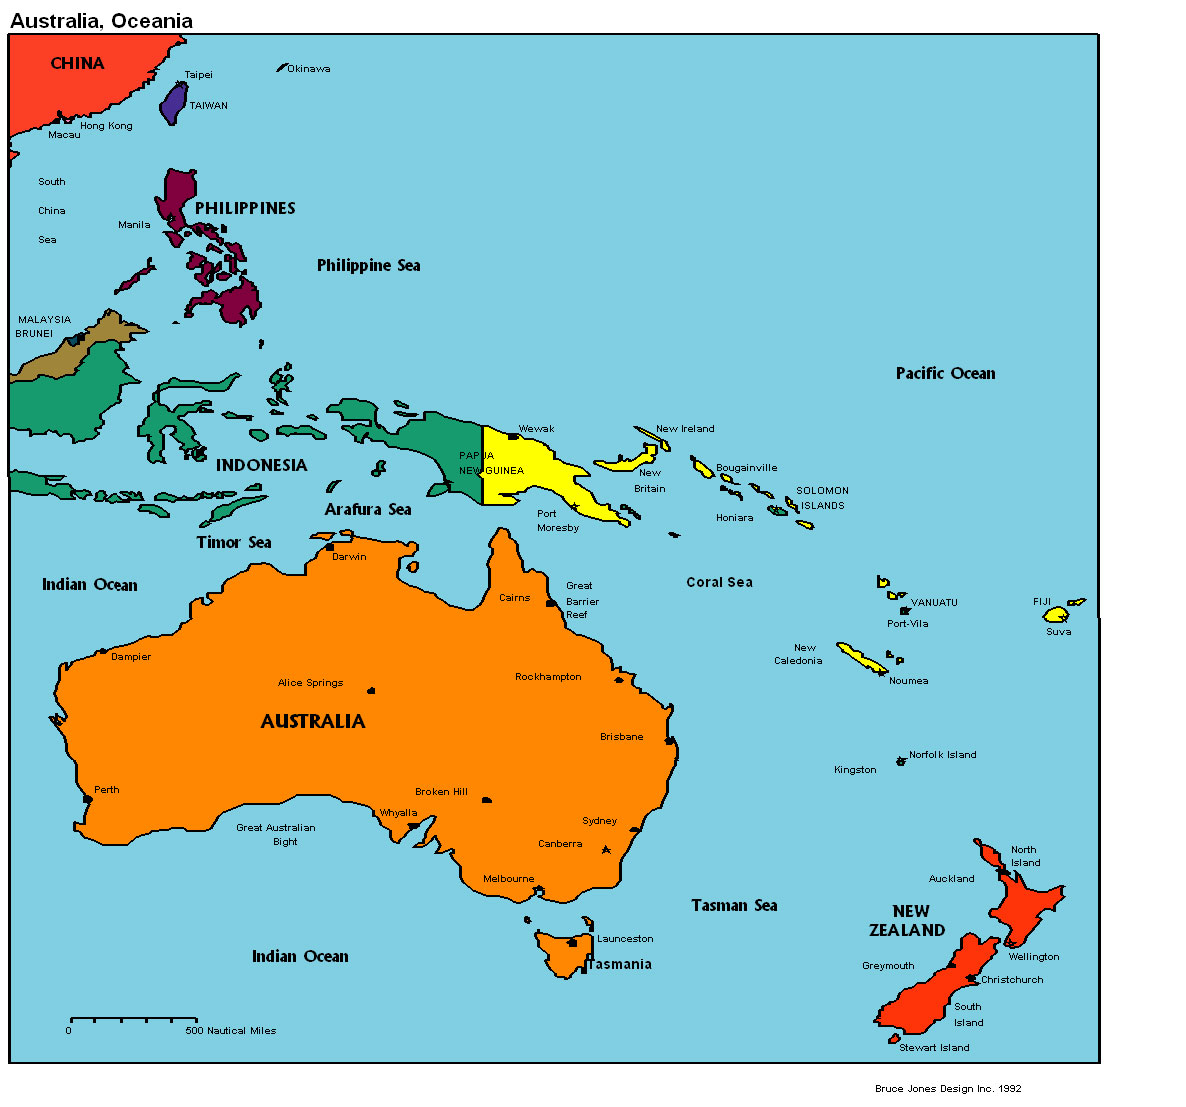 Australia Political map, Australia